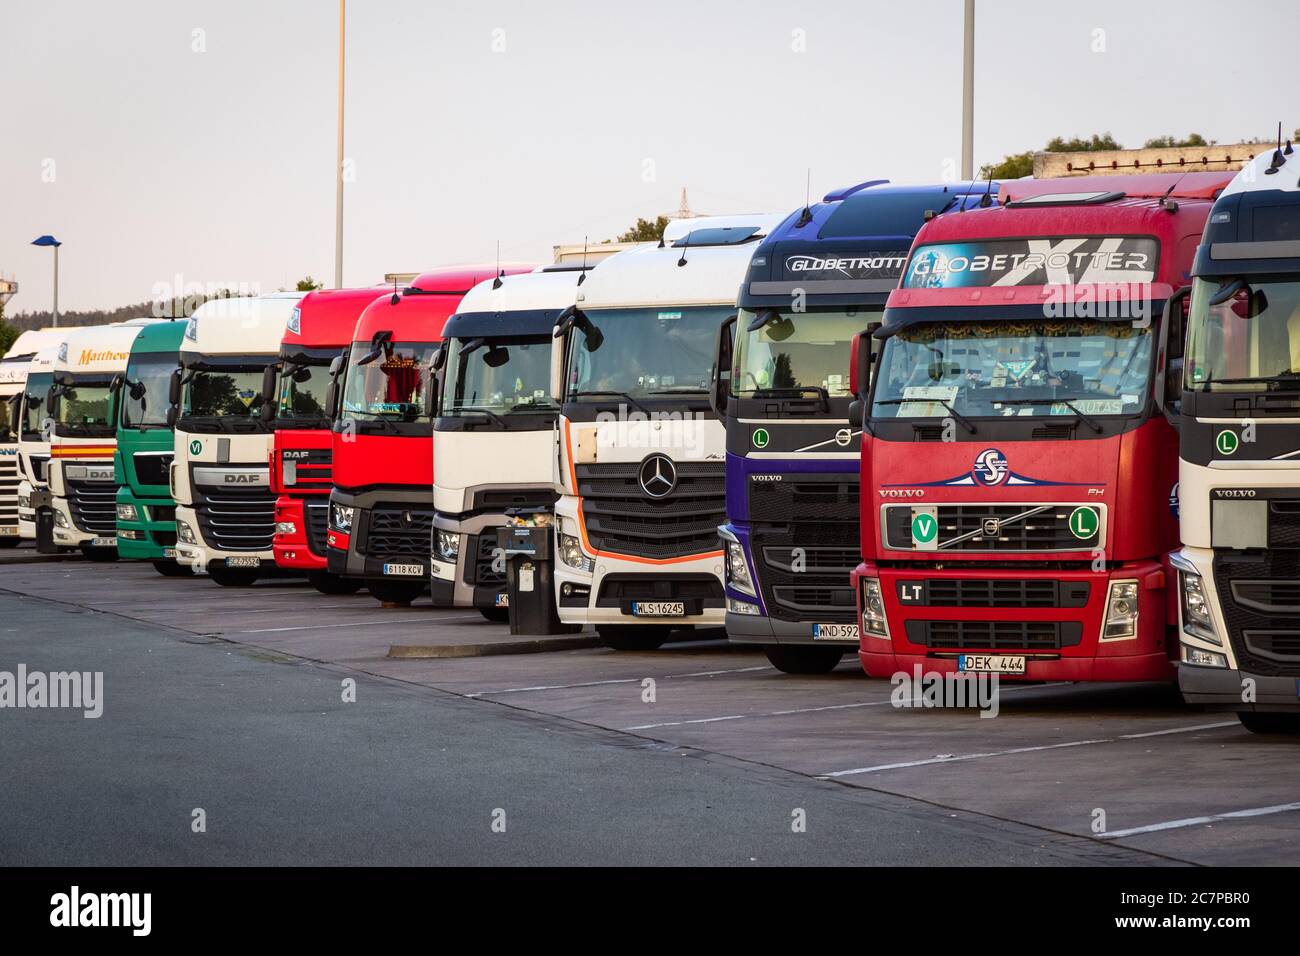 E30 HIGHWAY, ALLEMAGNE - 14 JUIN 2019 : rangée de plusieurs camions de société garés dans un parking de nuit de camions, le long de l'autoroute E30 en Allemagne. Banque D'Images